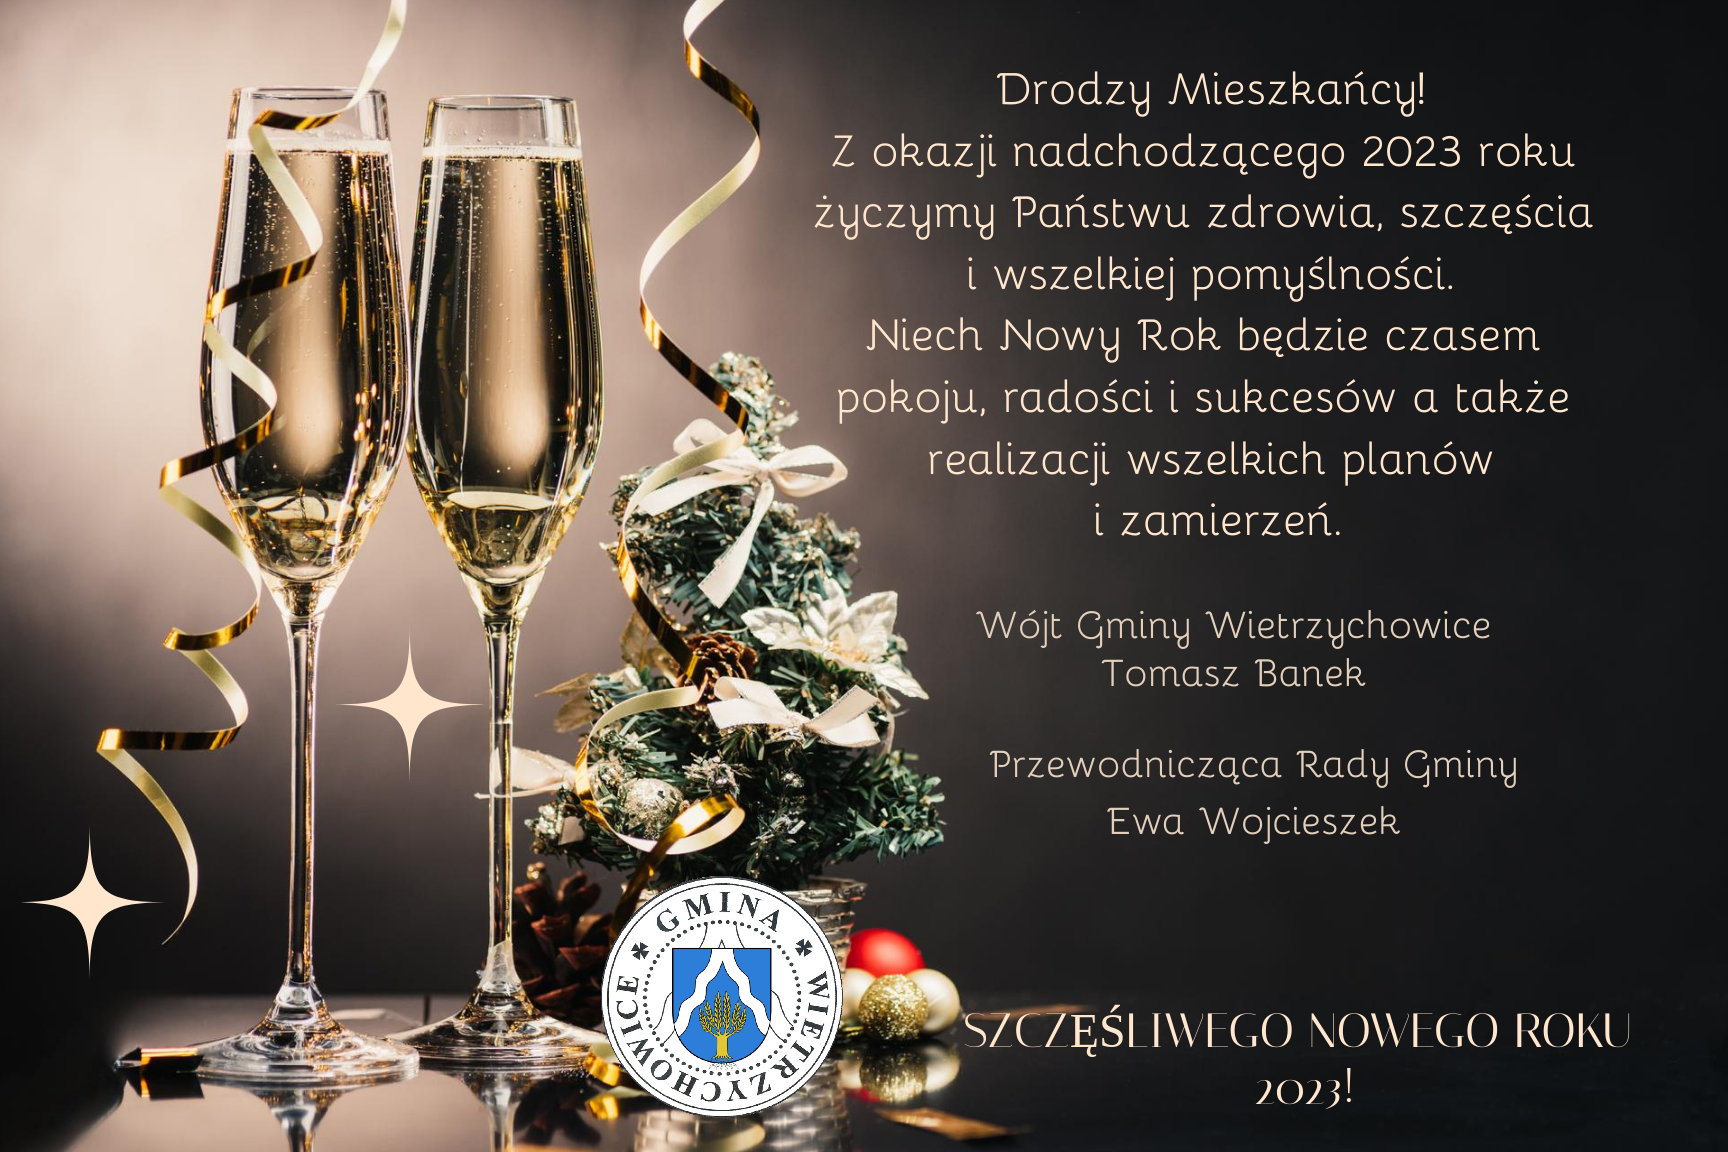 grafika przedstawia na ciemnym tle z lewej strony dwa kieliszki do szampana, małą choinkę oraz logo z herbem gminy Wietrzychowice. Z prawej strony tekst życzeń.